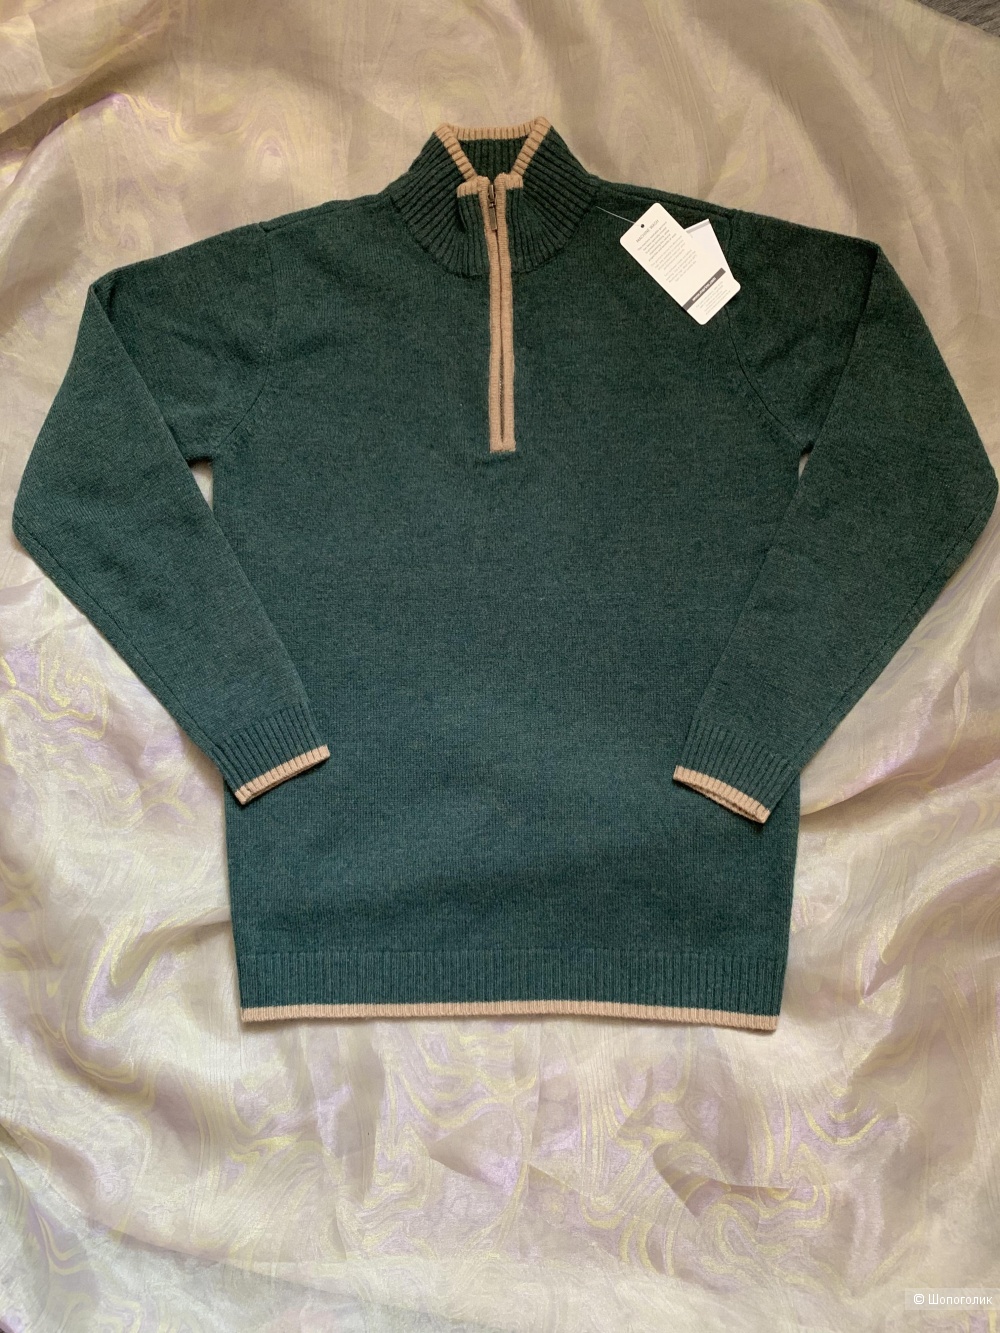 Мужской свитер WoolOvers размер S